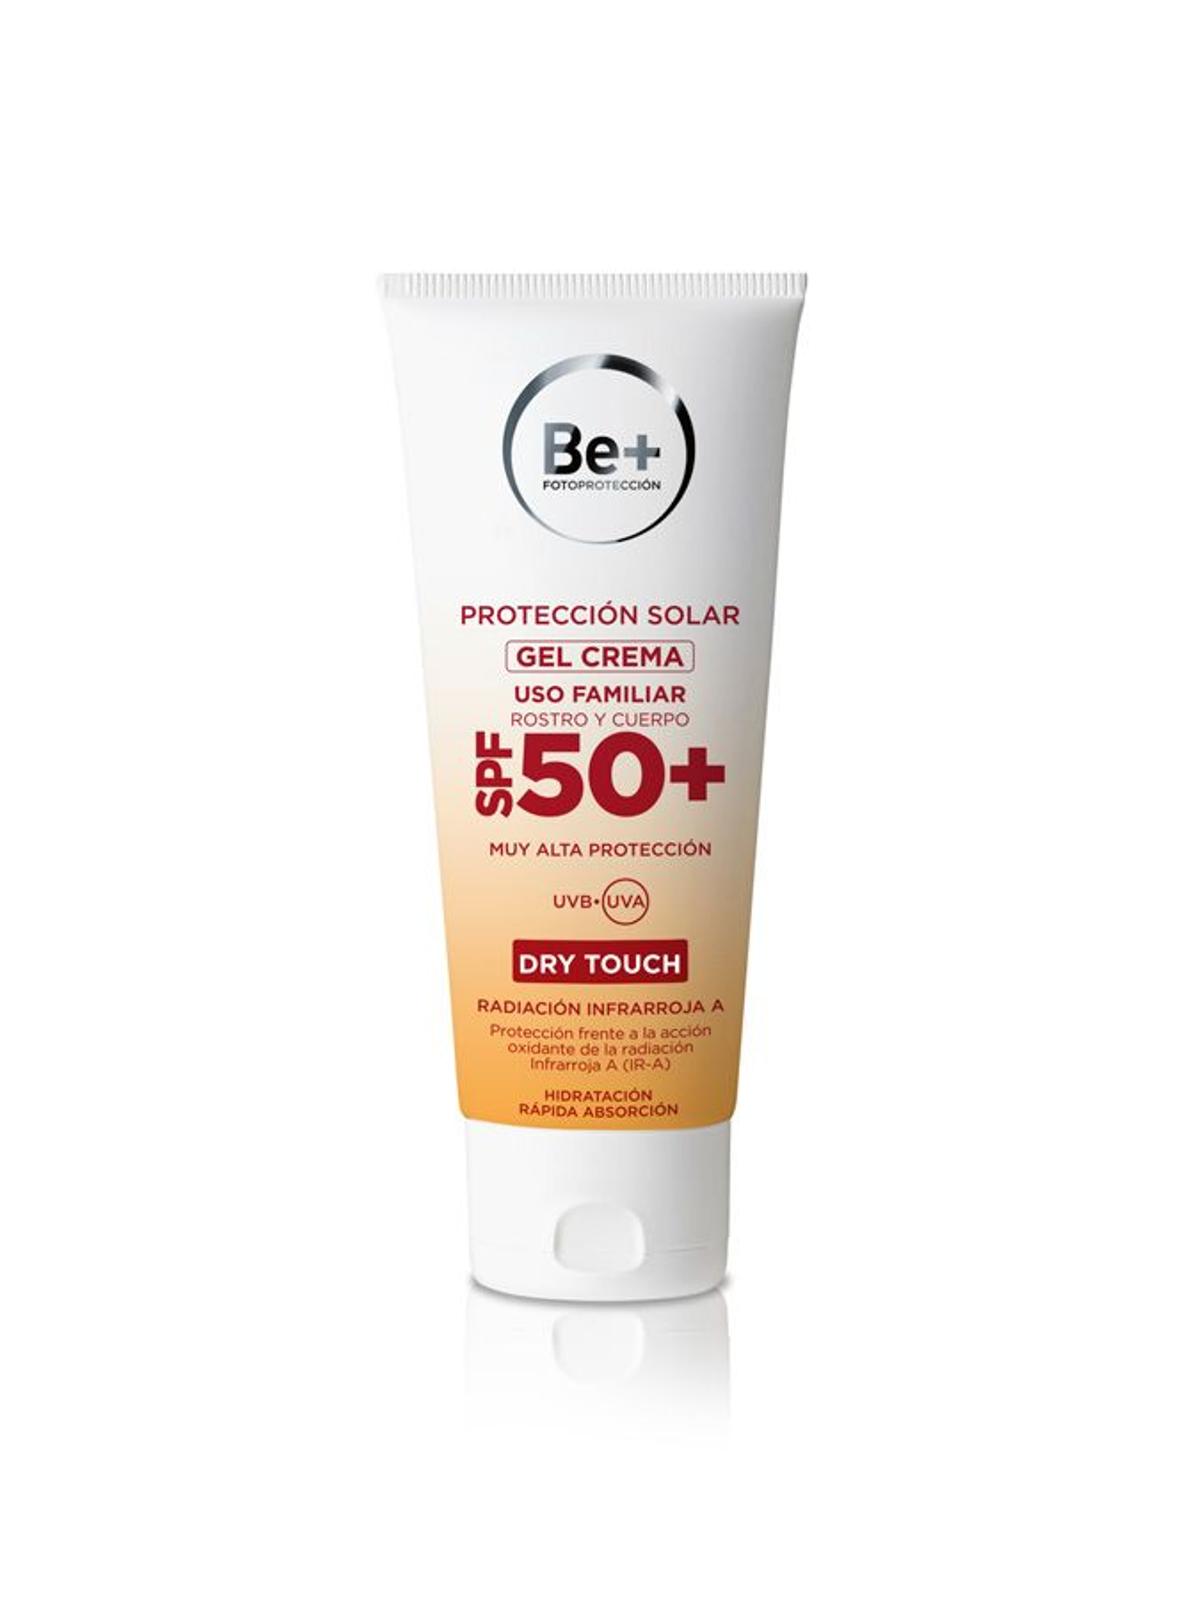 8. Gel crema para rostro y cuerpo SPF50+, de Be+